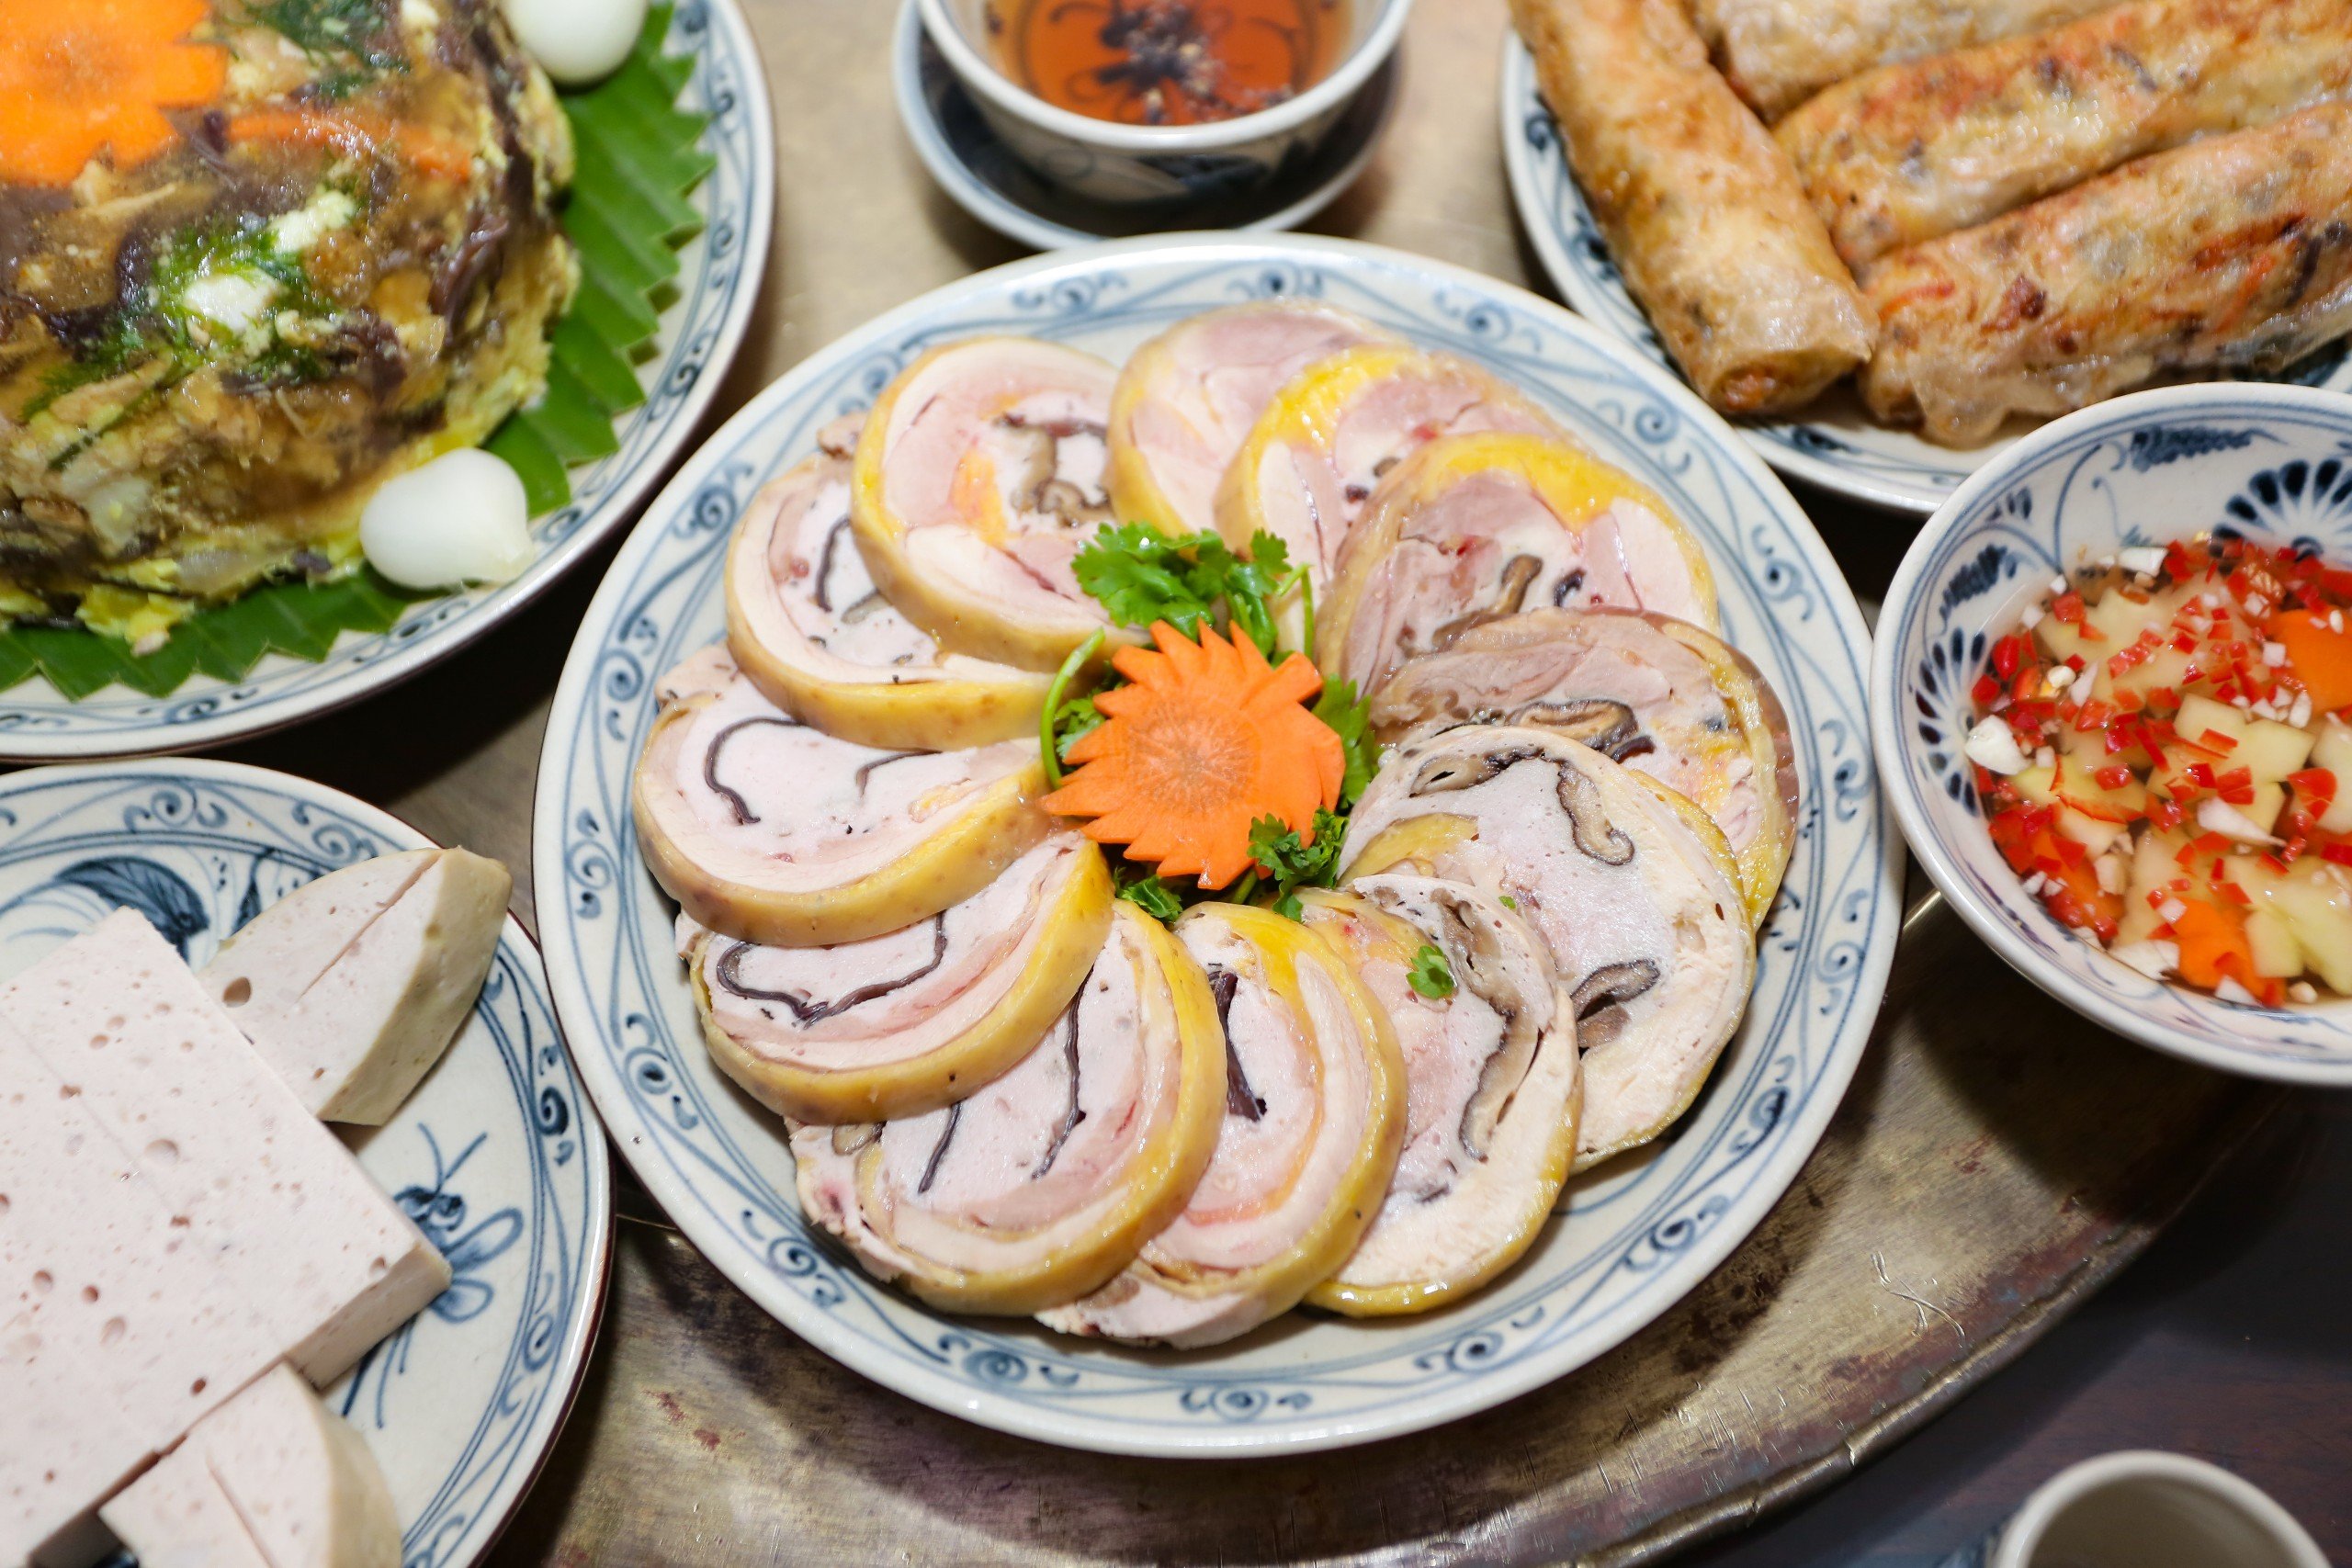 Nghệ nhân ẩm thực trình bày mâm cỗ cổ truyền của người Việt trong ngày Tết Nguyên đán - Ảnh 2.